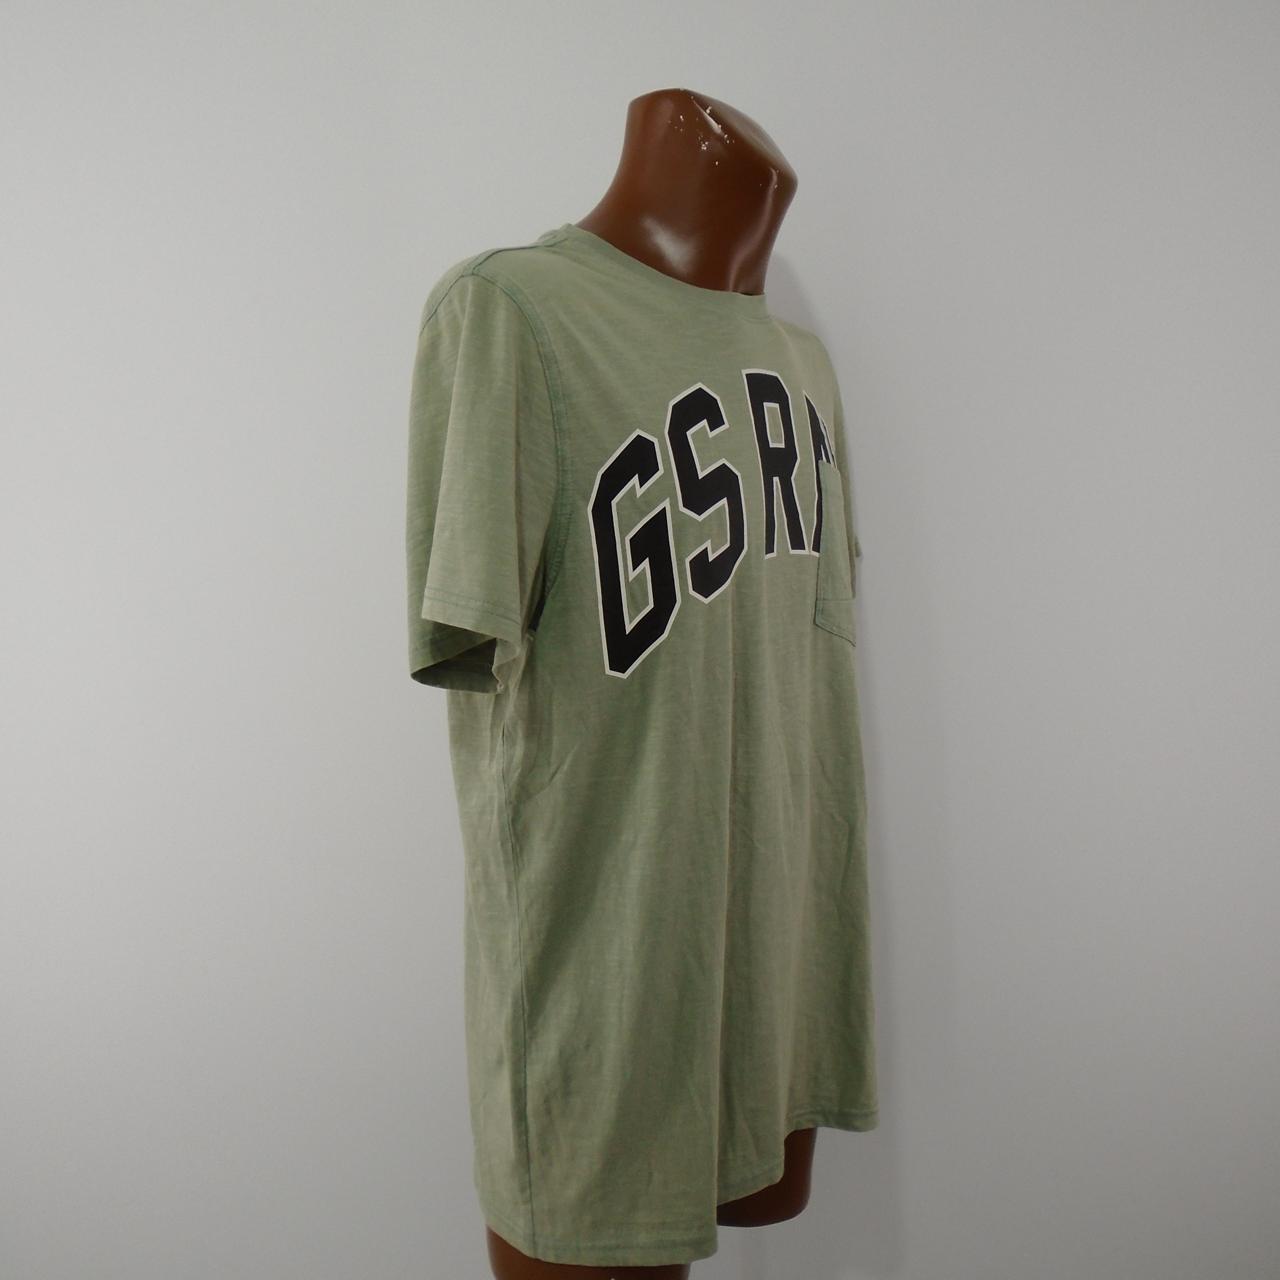 Herren-T-Shirt G-Star. Grün. L. Gebraucht. Sehr gut